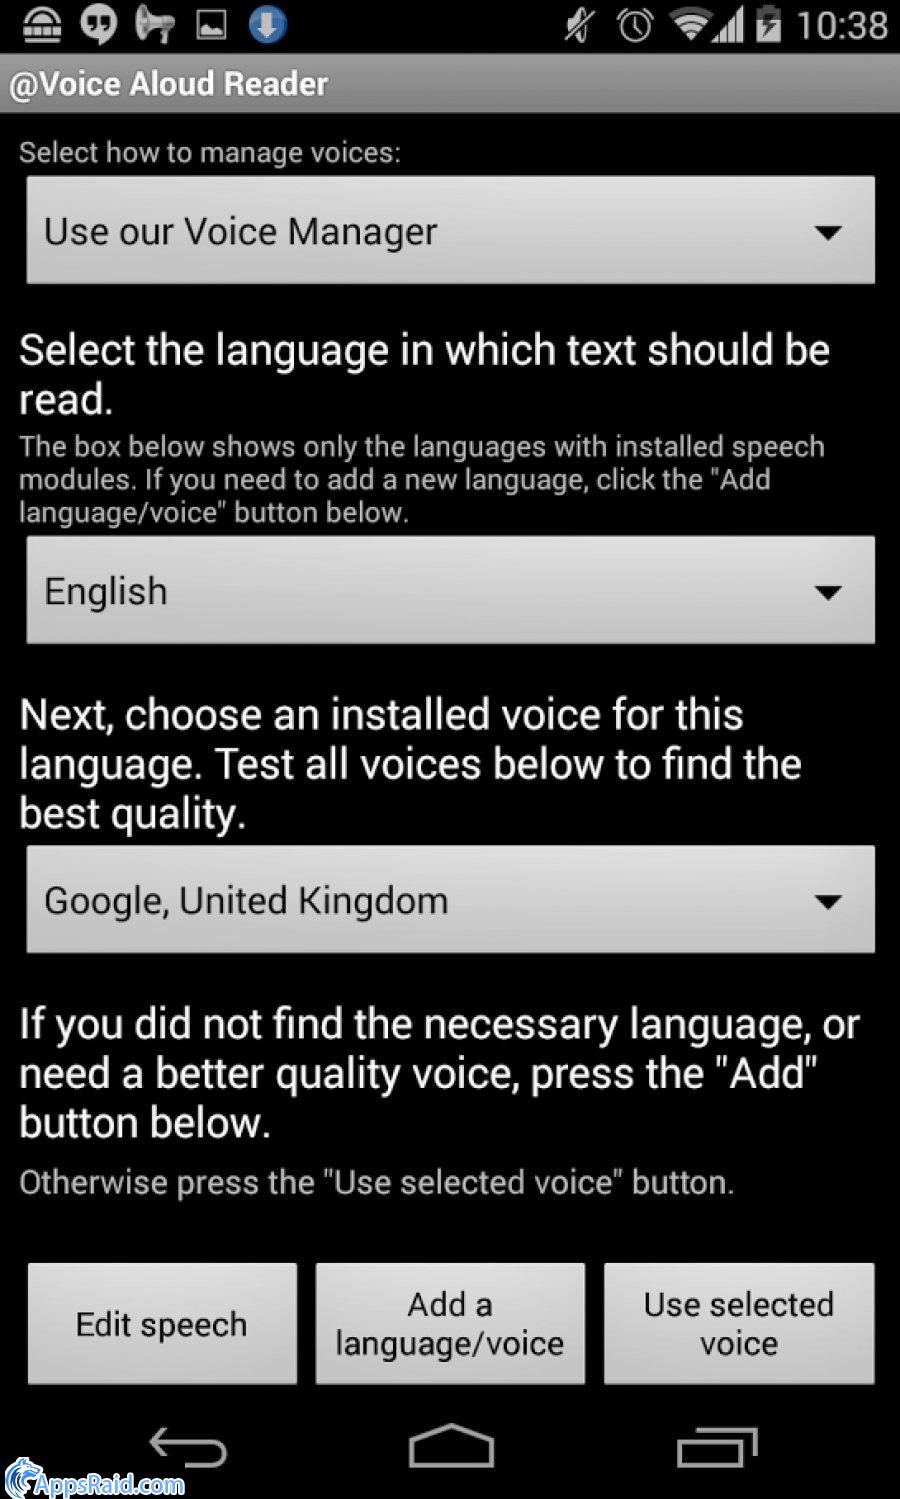 Voice aloud. Voice Aloud Reader. @Voice Aloud 4pda. Add Voice приложение. Словари приношений для @Voice Aloud Reader?.